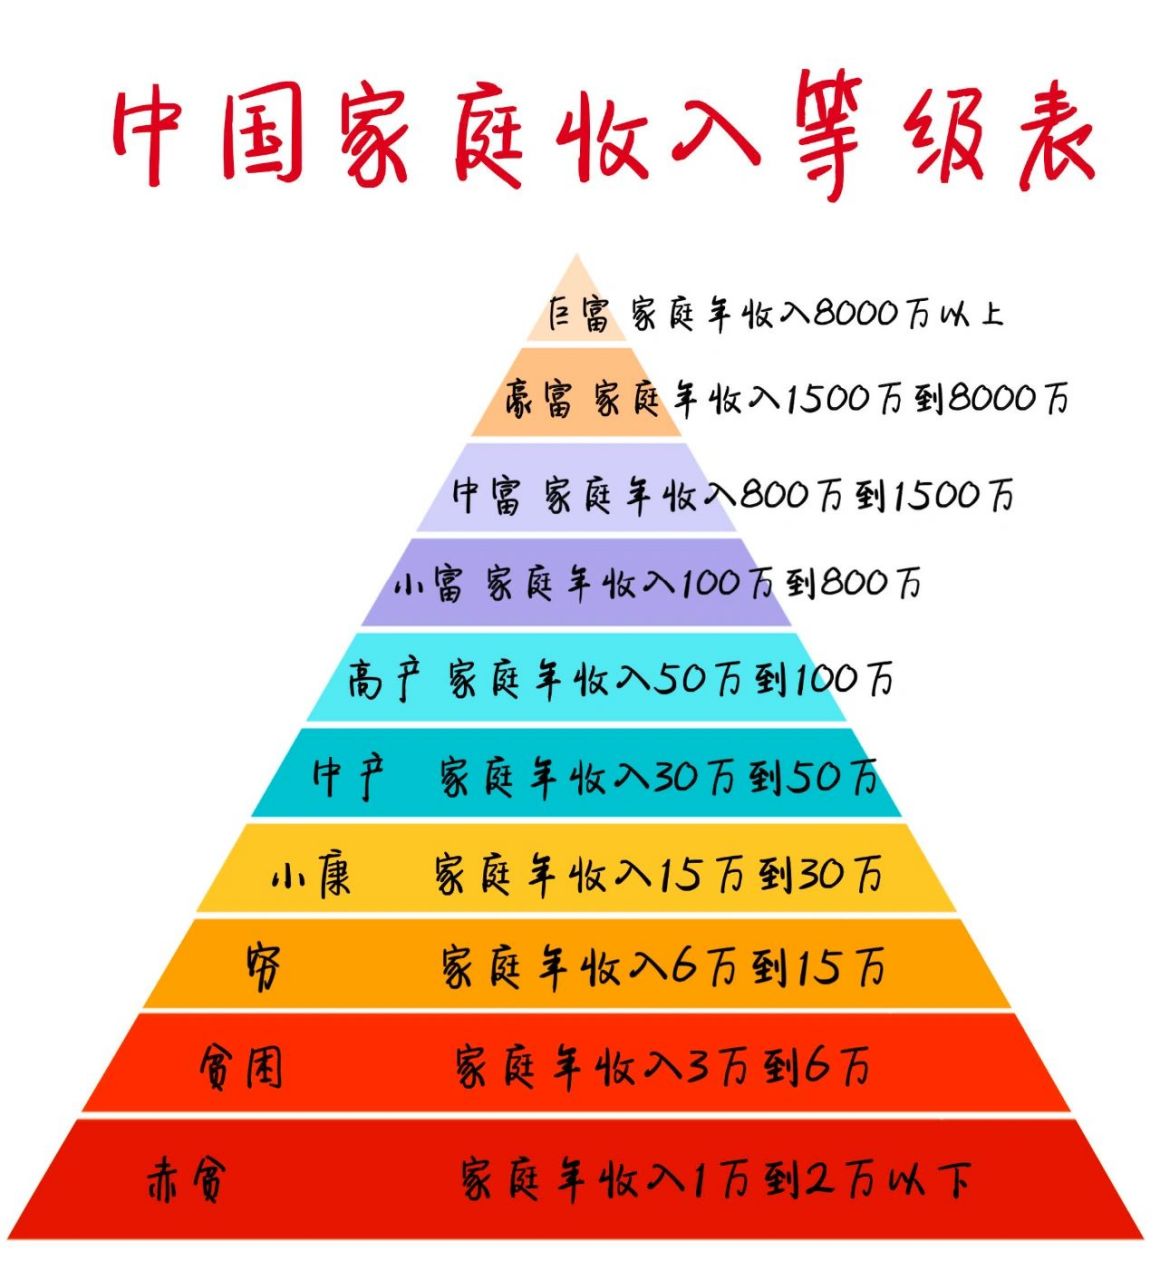 中国家庭收入等级表 大家在中国收入哪个等级?